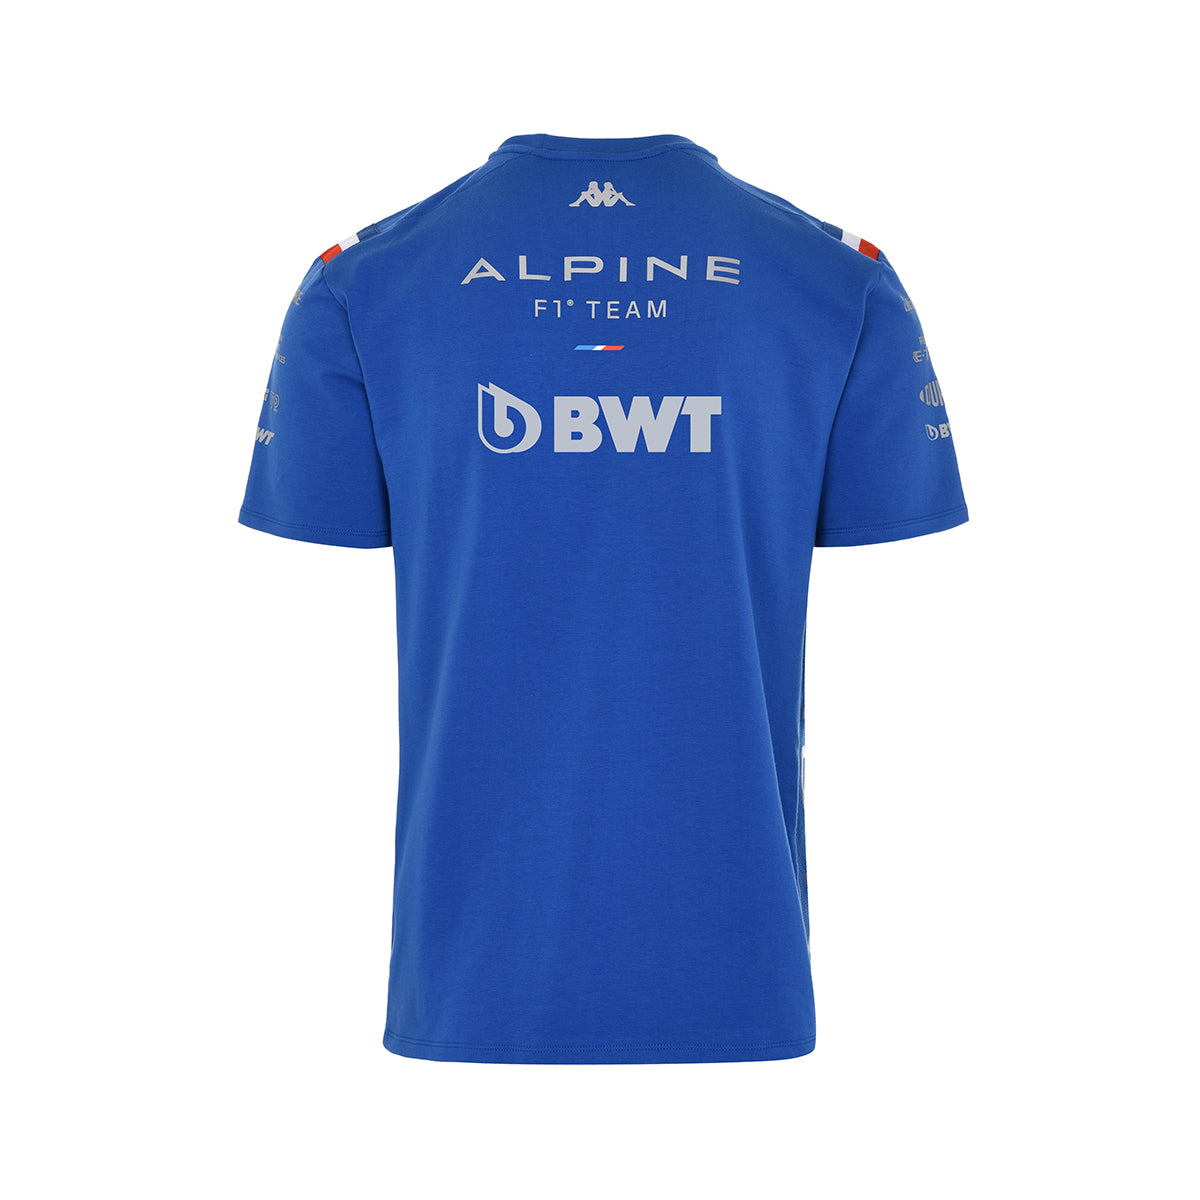 ALPINE F1 Team T-Shirt Blue Royal Marine Kid